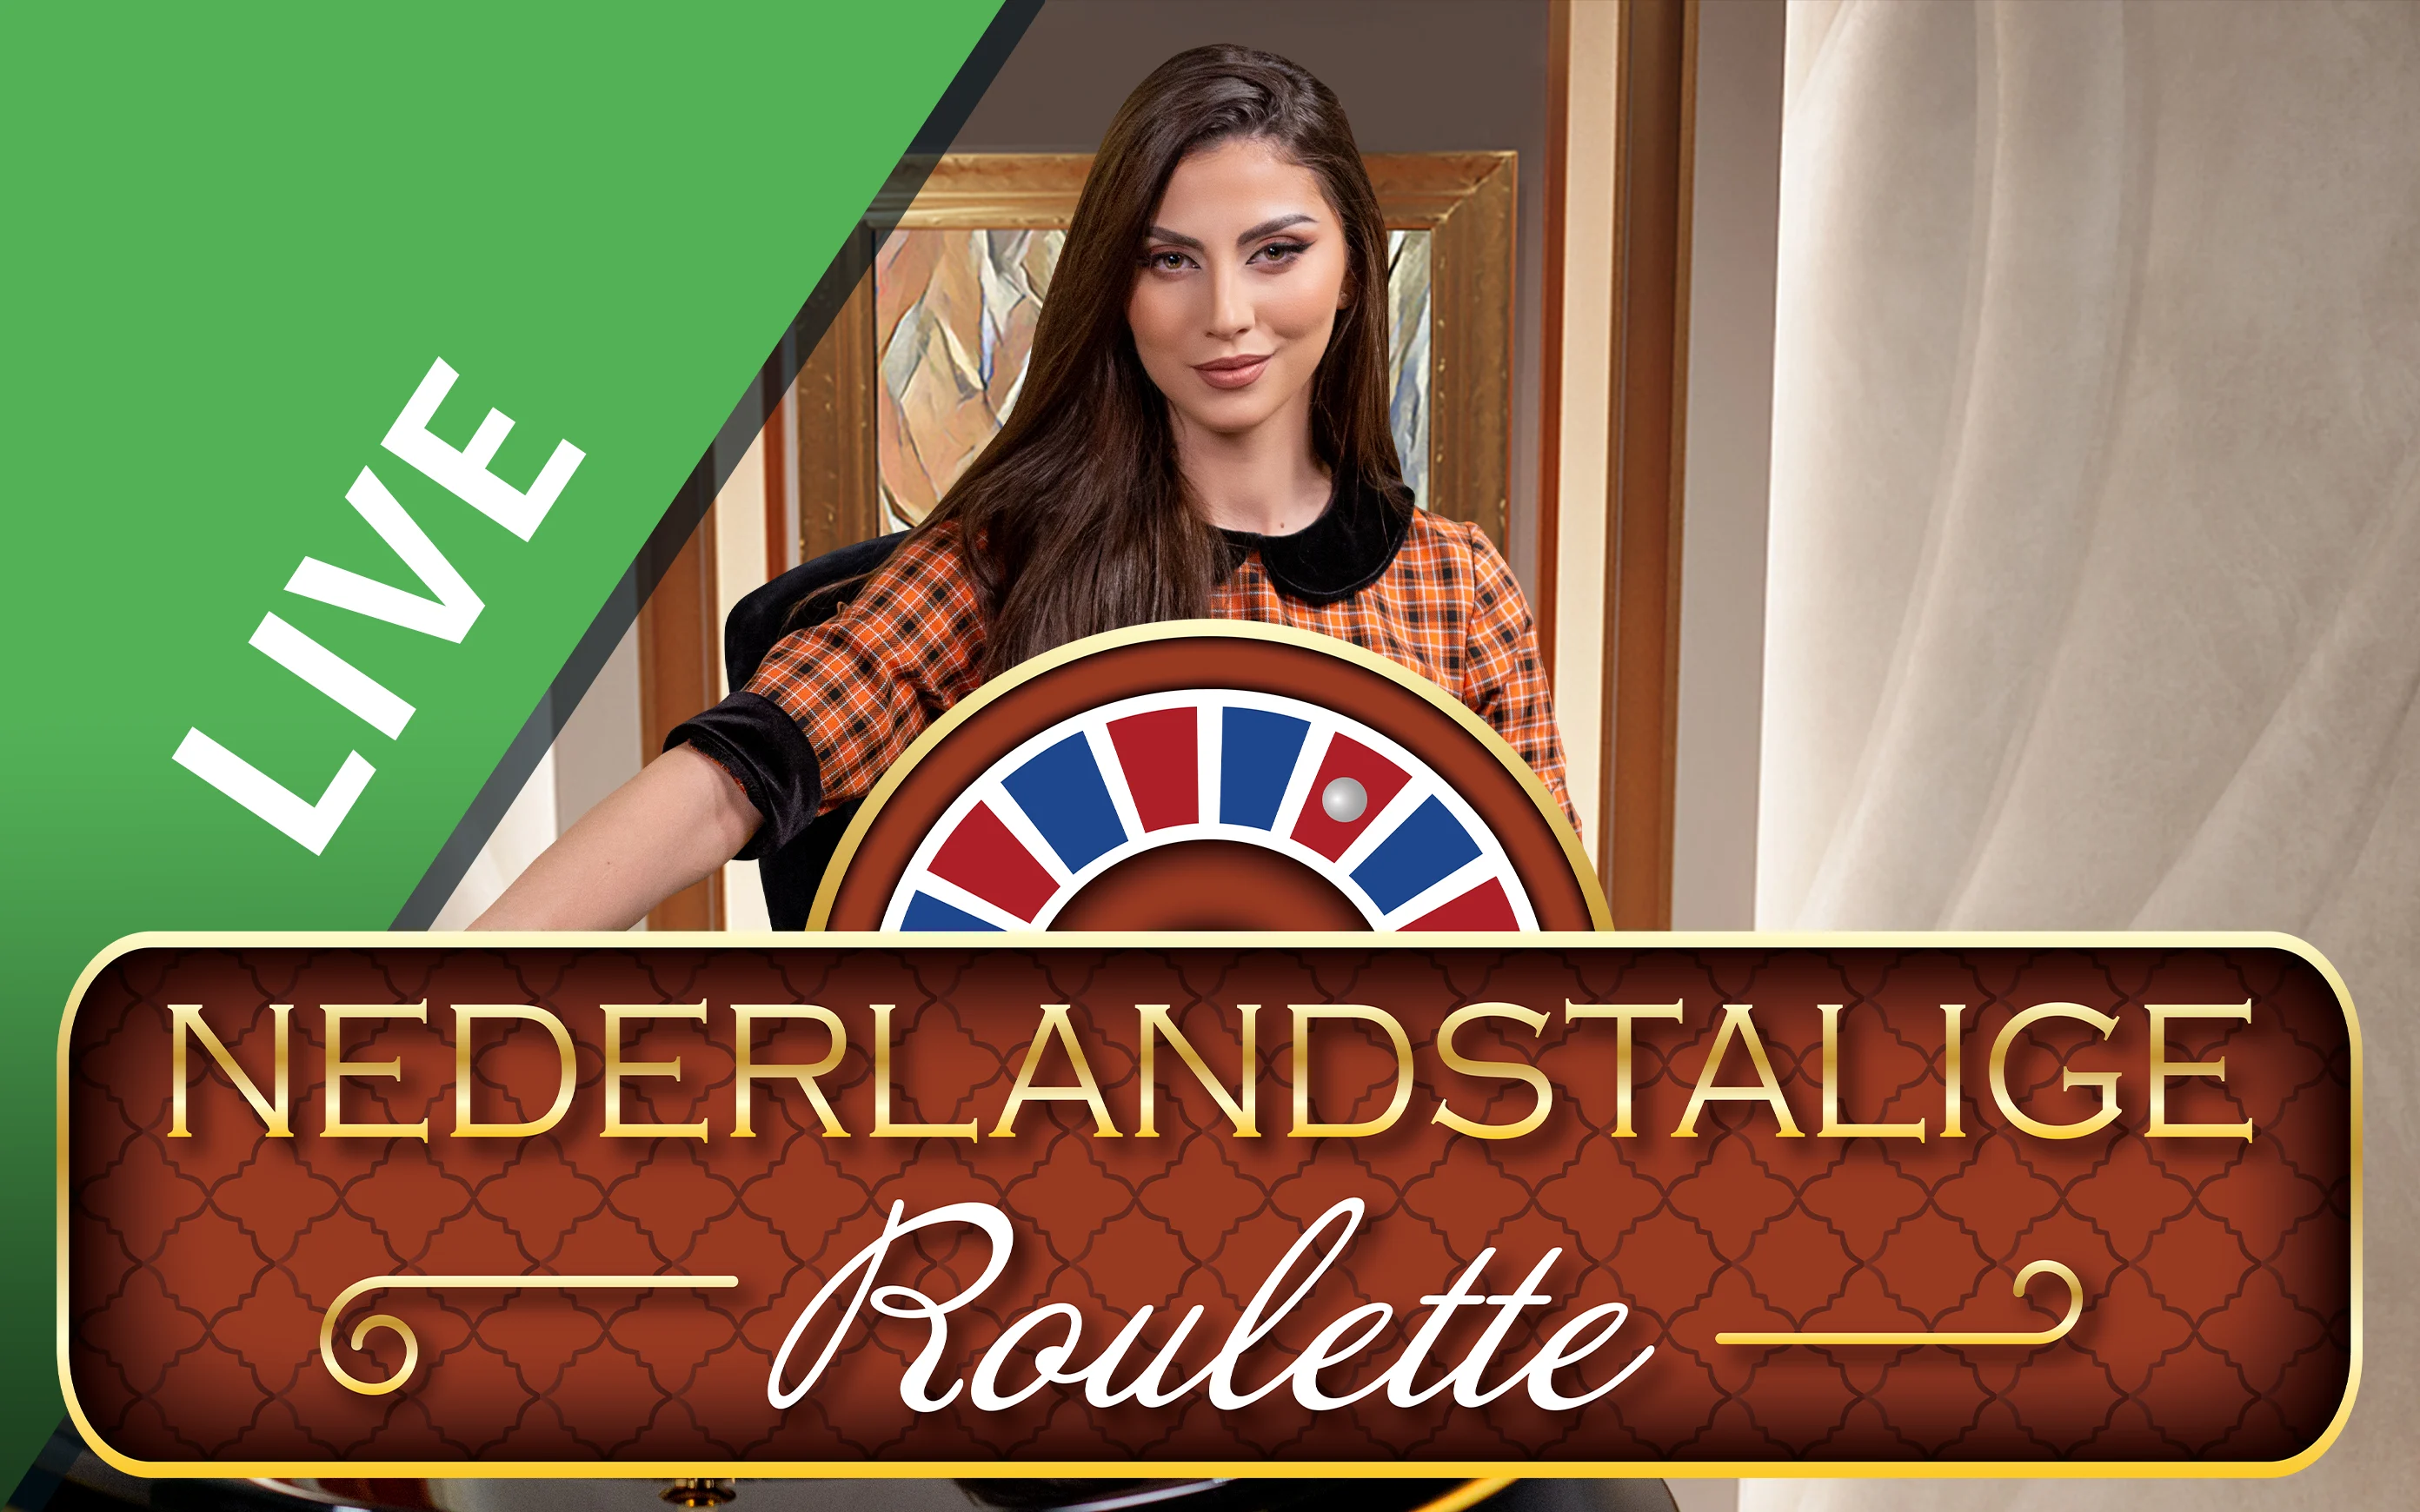 Play Nederlandstalige Roulette on Starcasino.be online casino